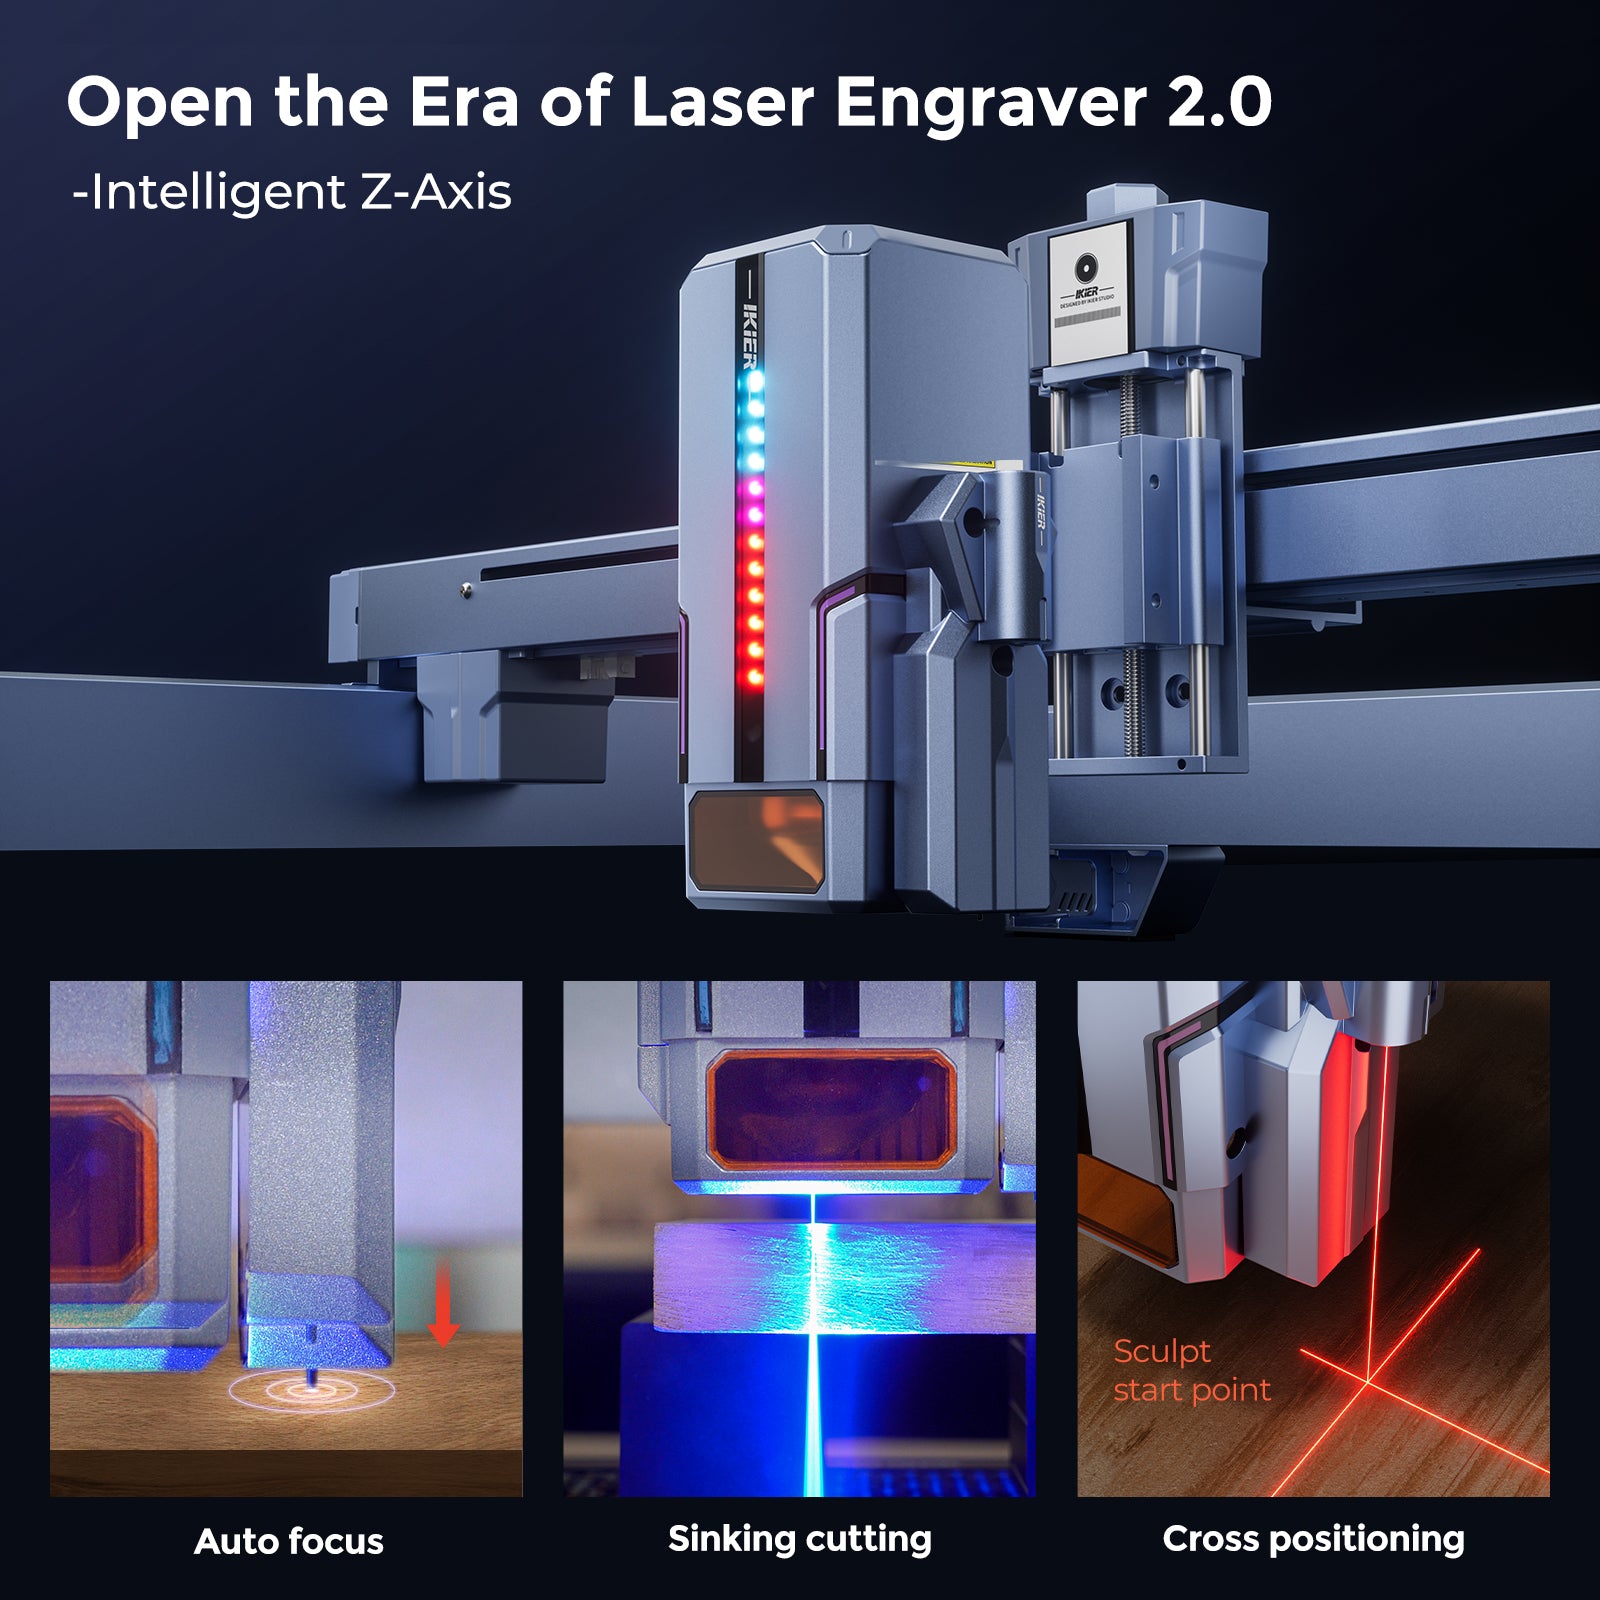 iKier K1 Ultra: 36W Laser Engraving and Cutting Machine